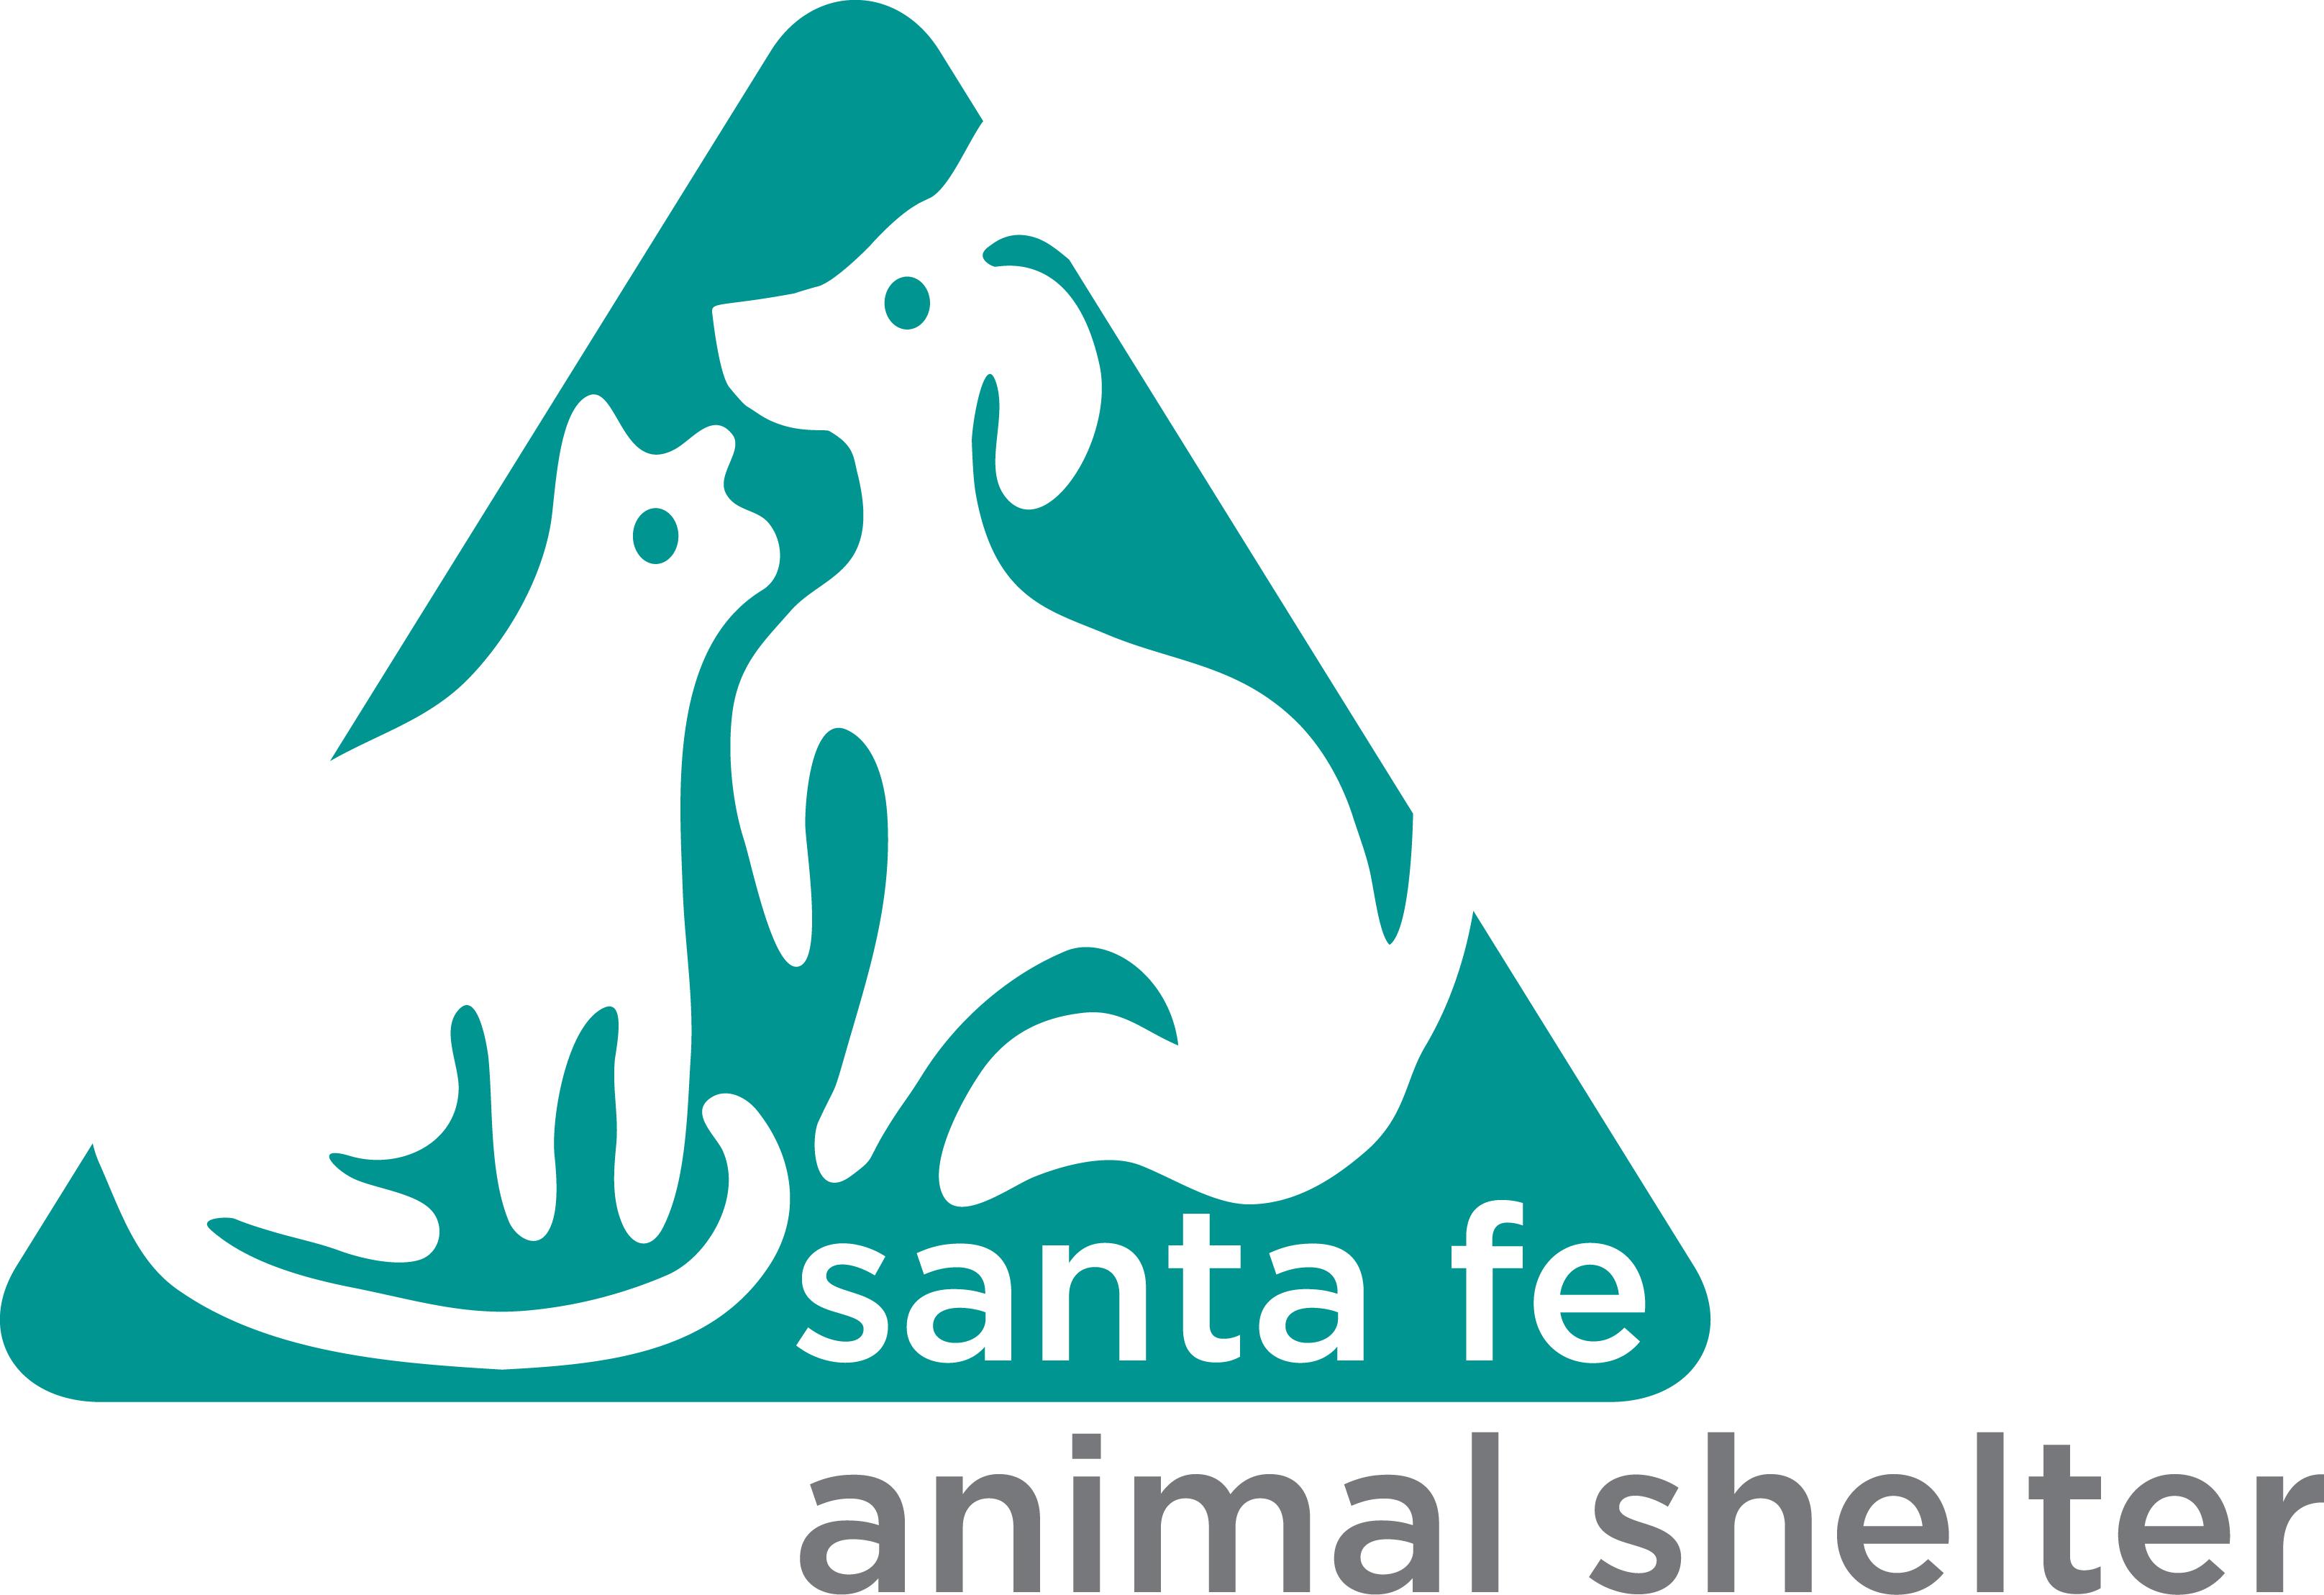 Santa Fe Animal Shelter & Humane Society